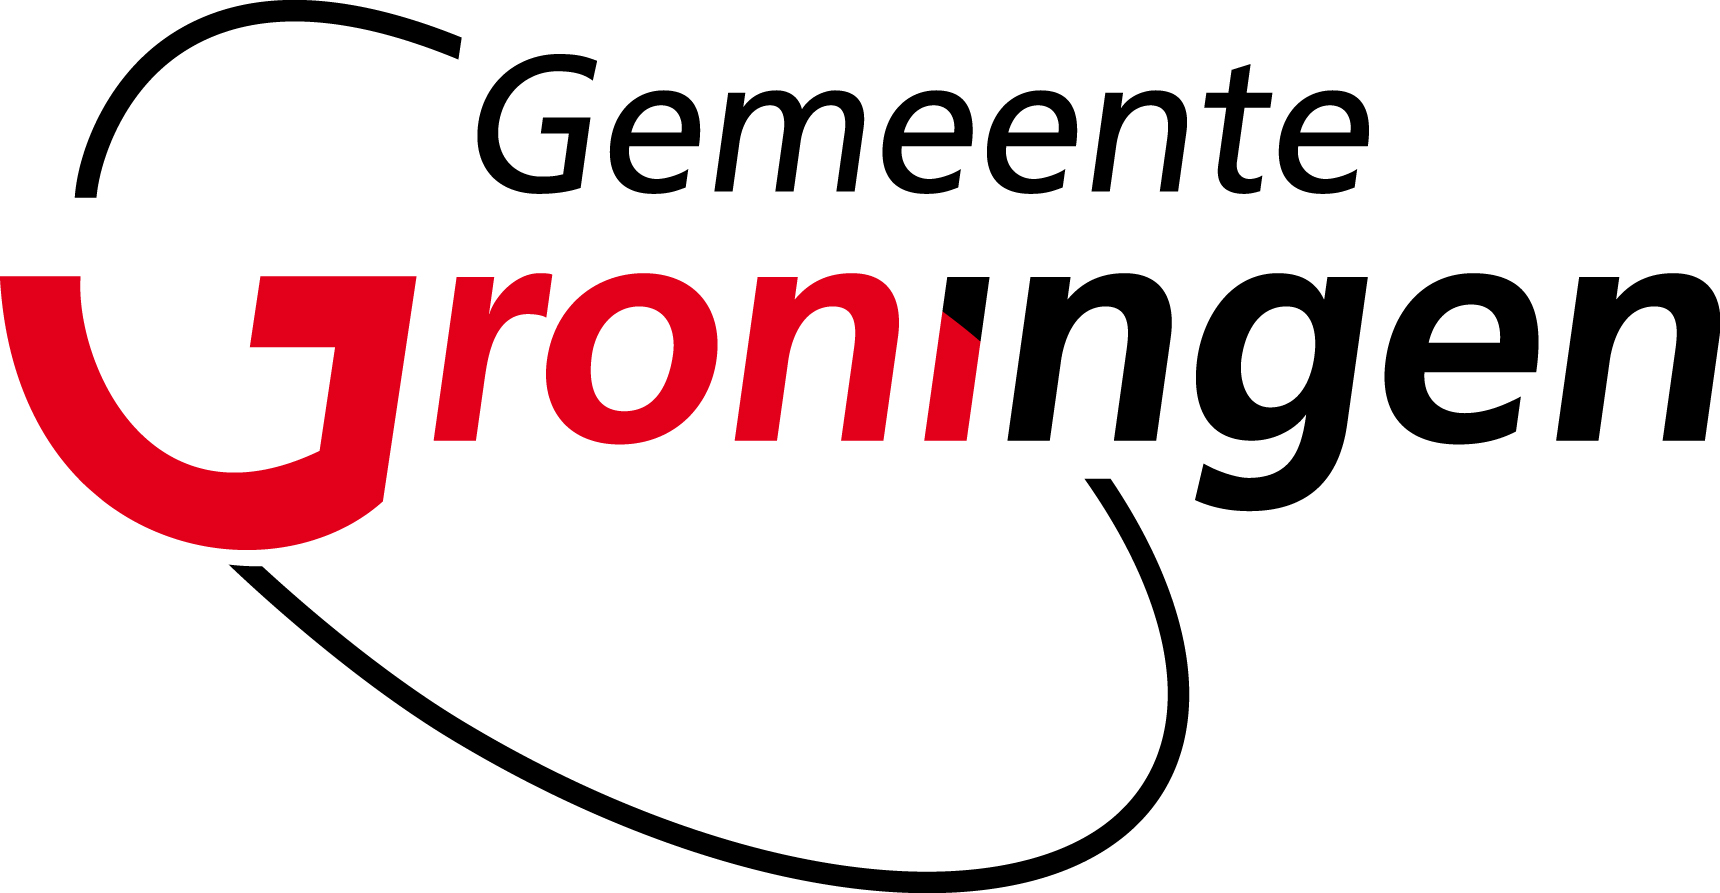 Gemeente Groningen; dakonderhoud voor 6 jaar onder de pannen